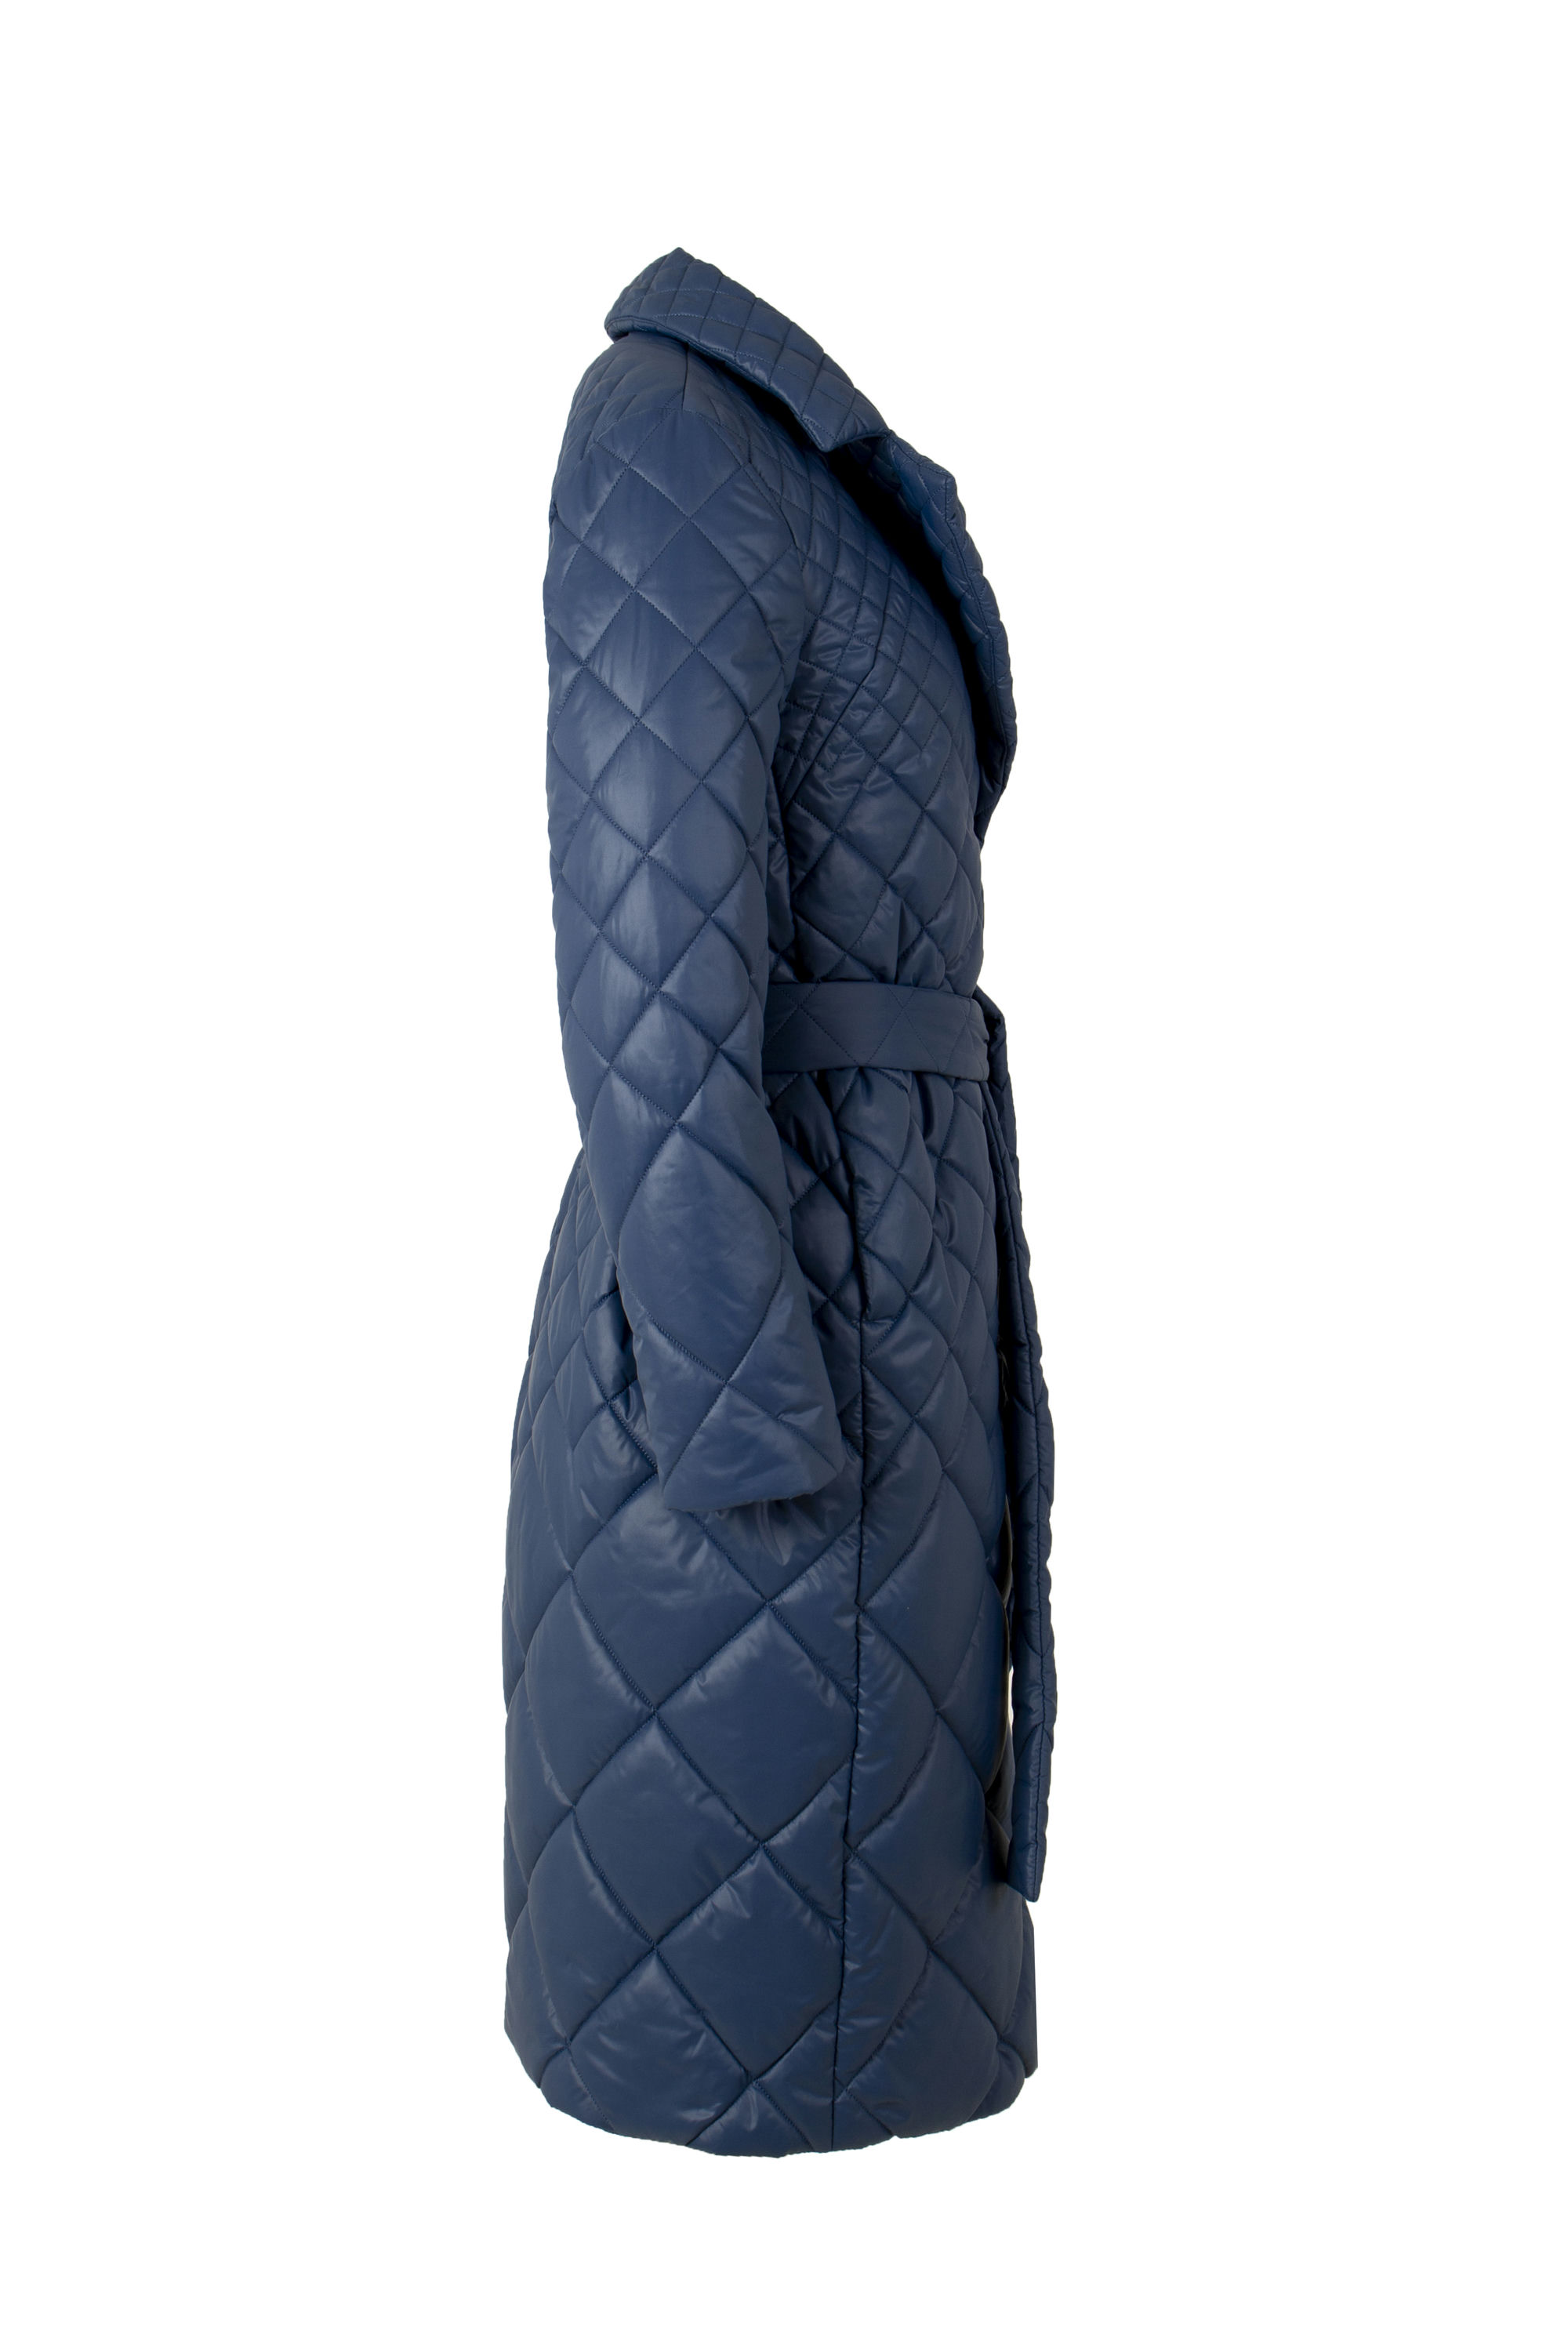 Пальто женское плащевое утепленное 5-12535-1. Фото 2.